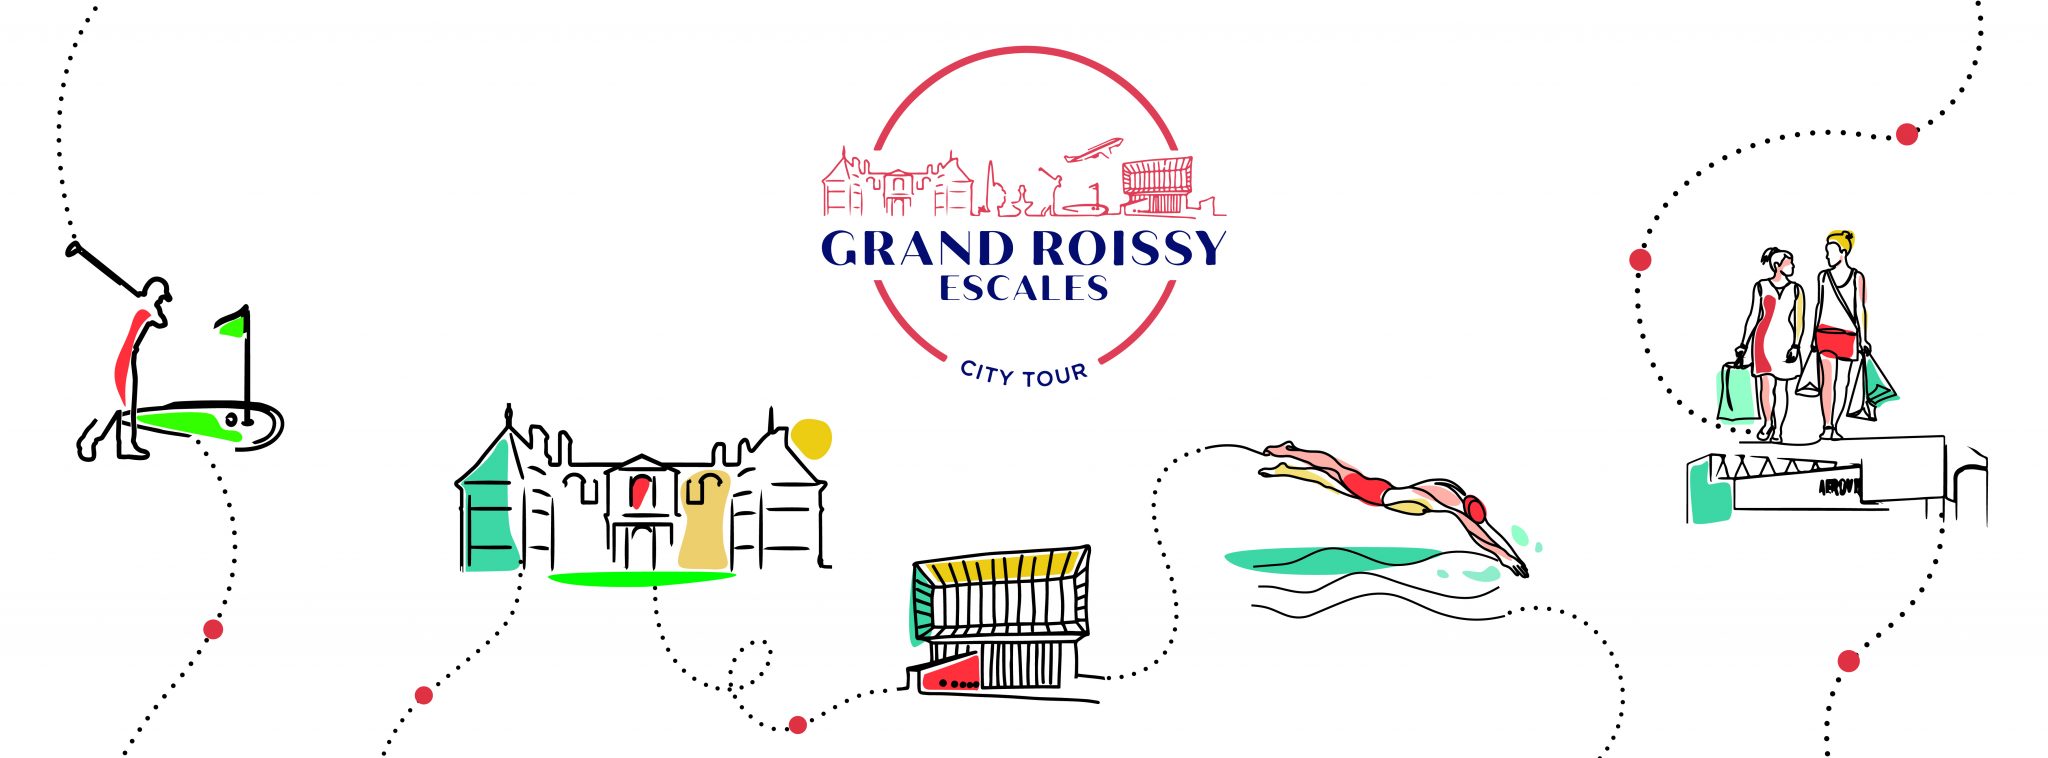 L'Ufficio del Turismo di Grand Roissy lancia il suo tour della città